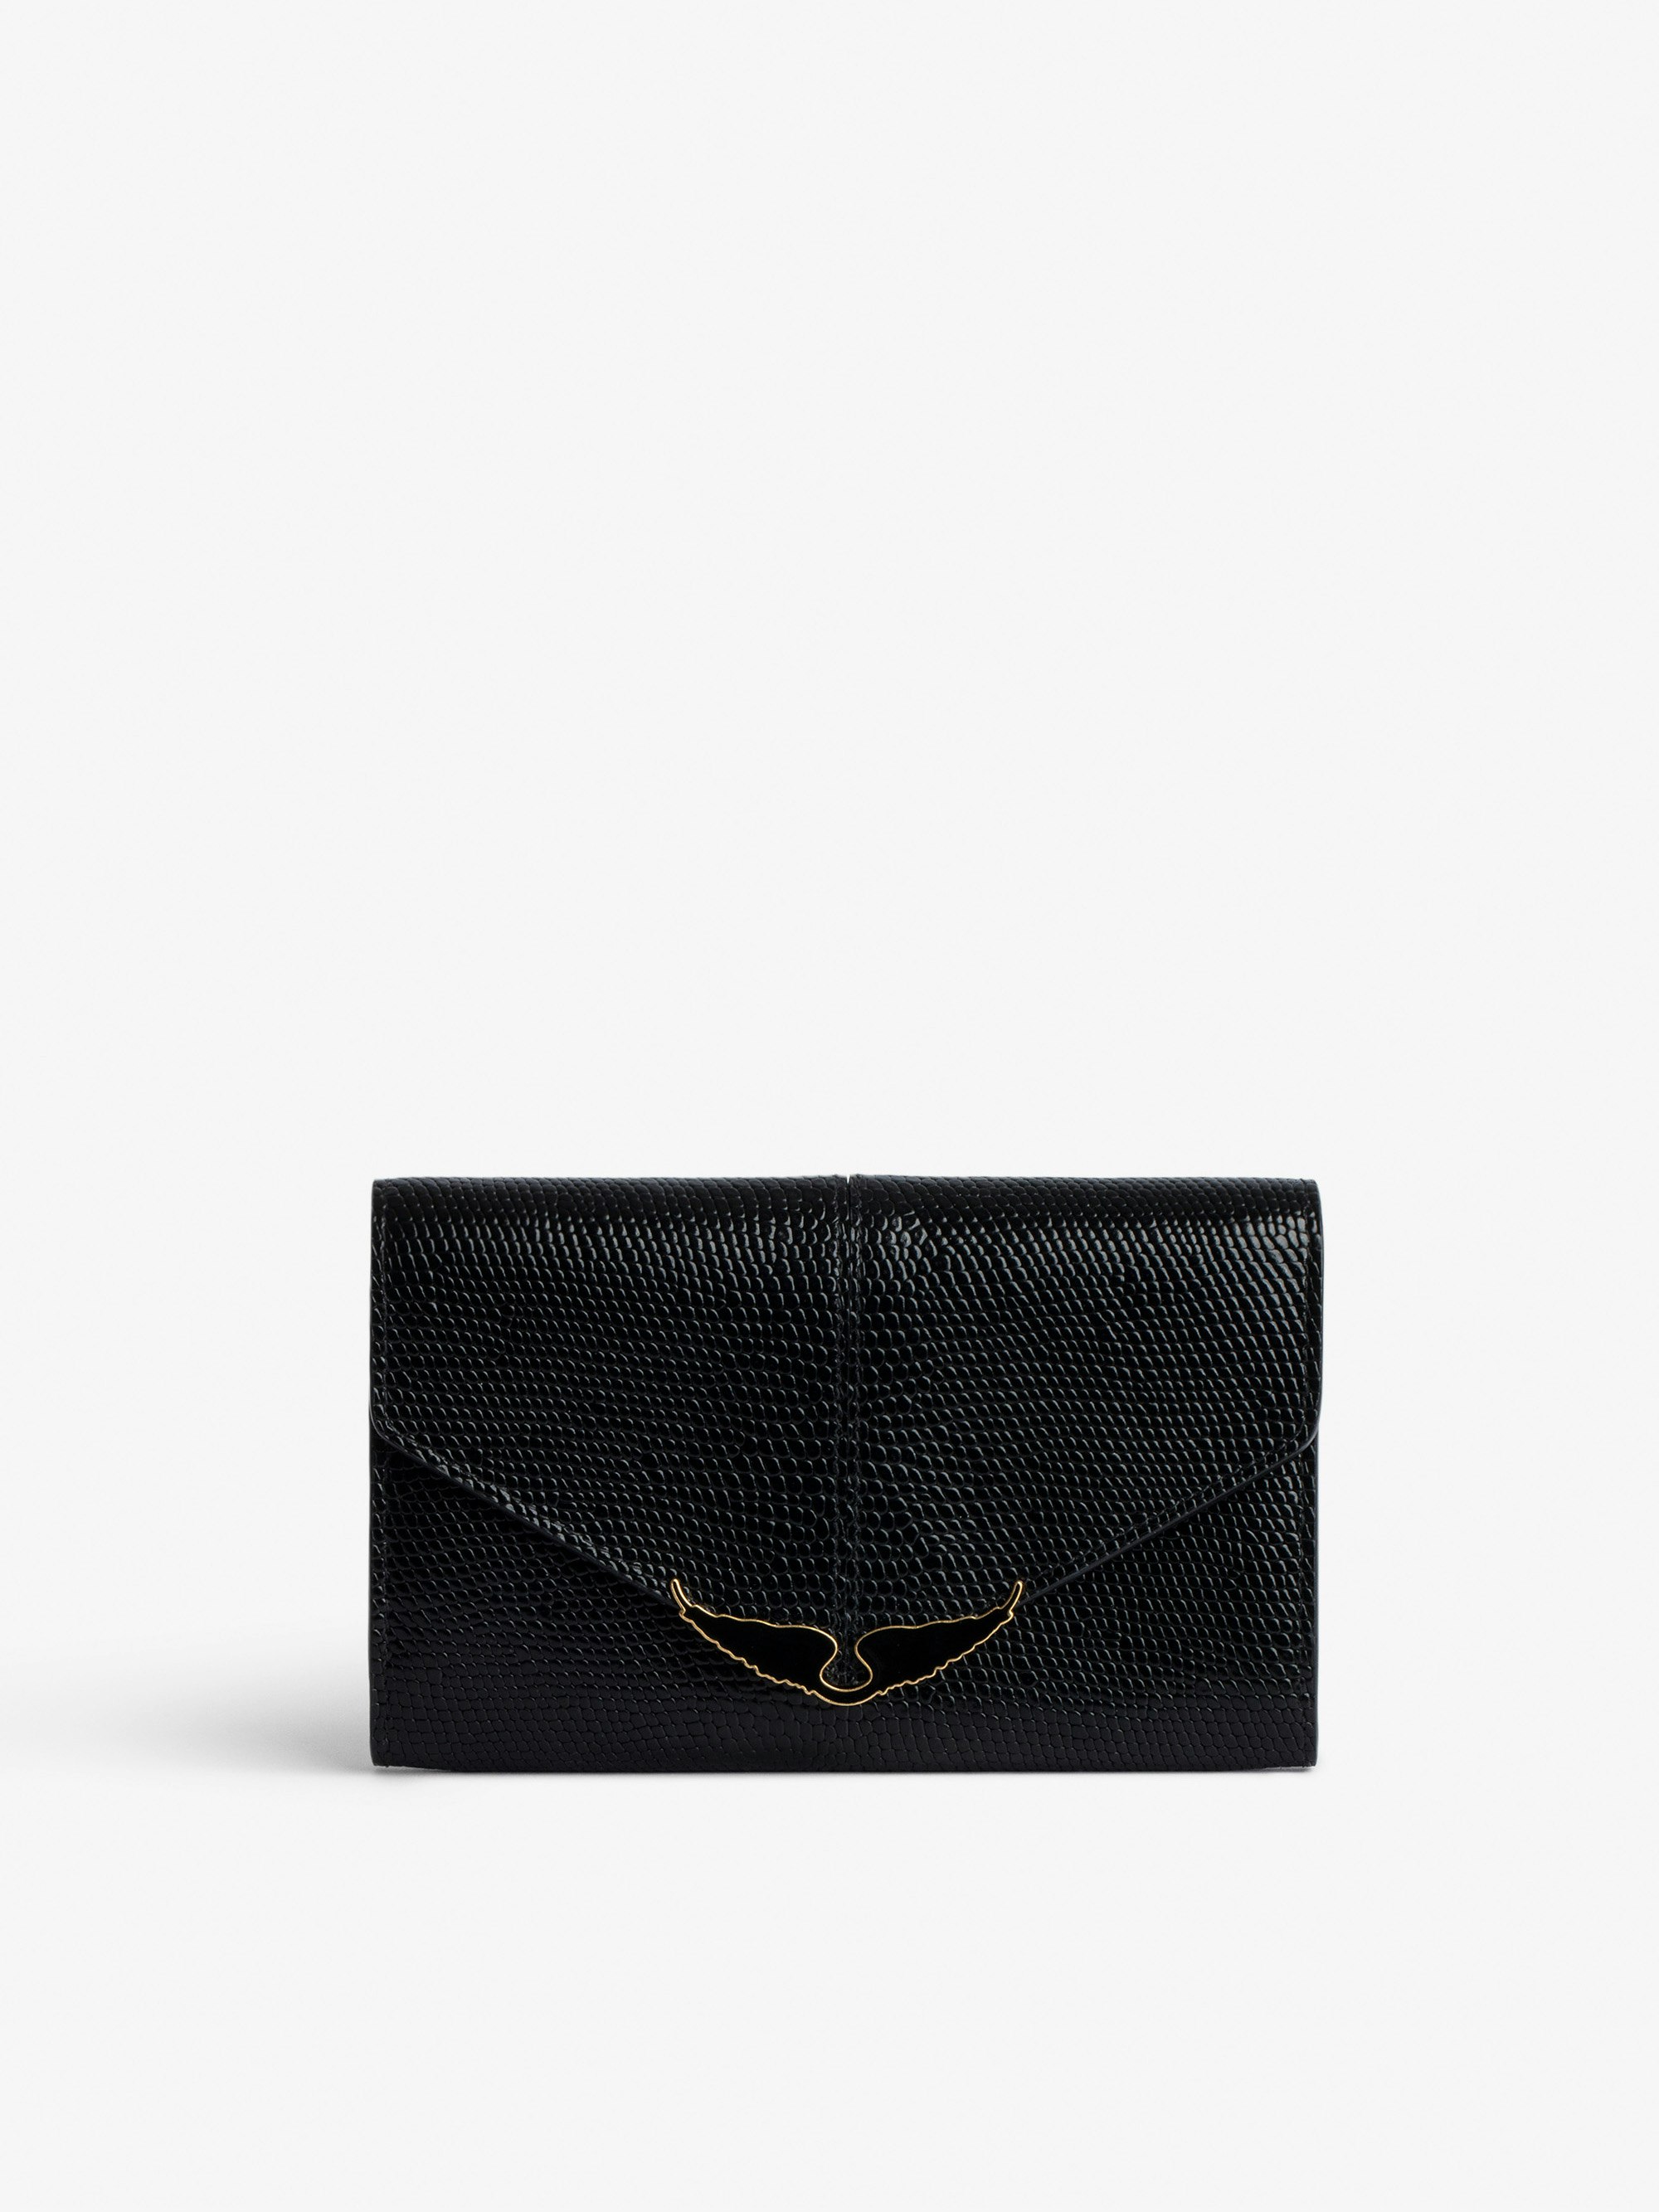 Portemonnaie Borderline - Damen-Portemonnaie aus schwarzem Glanzleder mit Leguanprägung und Verschluss mit schwarz lackierten Flügeln.